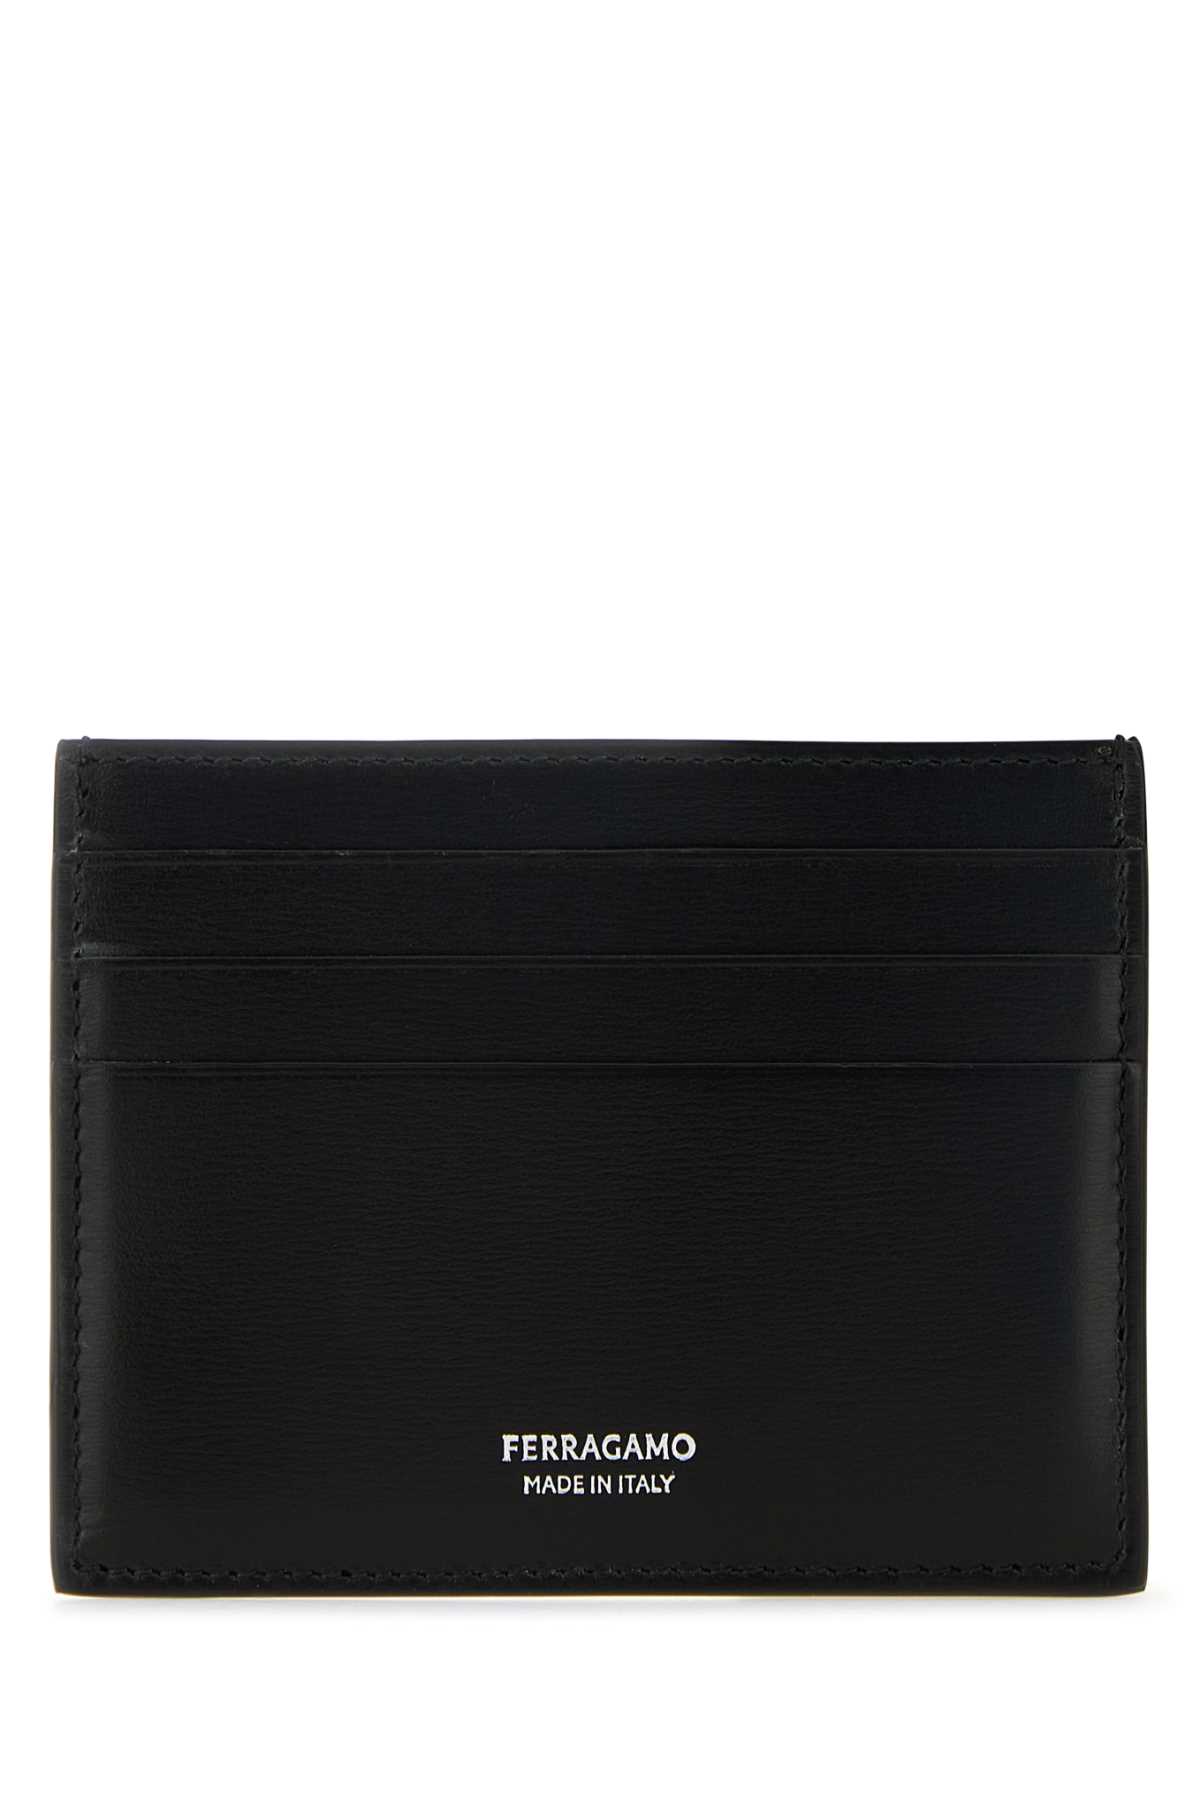 Ferragamo Black Leather Card Holder In Nero